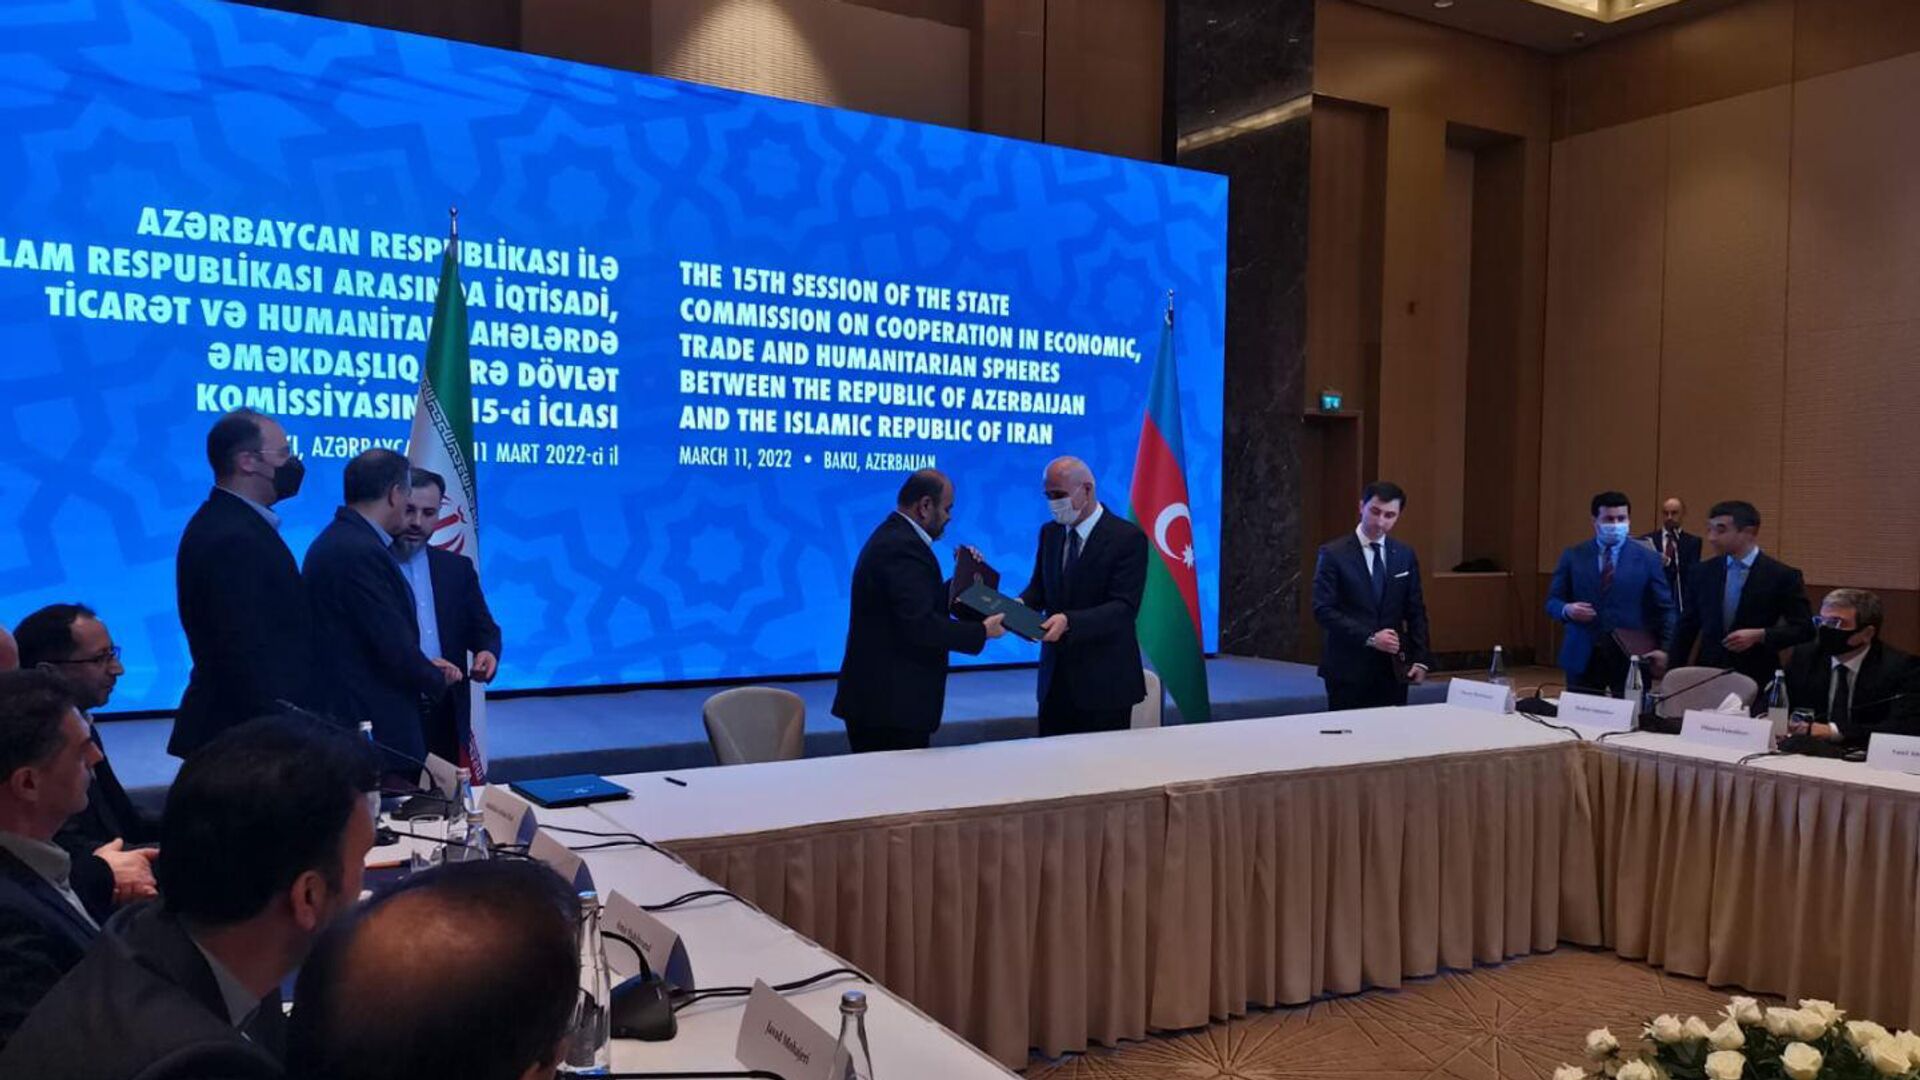 Между Азербайджаном и Ираном подписан меморандум о взаимопонимании по созданию новых коммуникаций - Sputnik Азербайджан, 1920, 11.03.2022